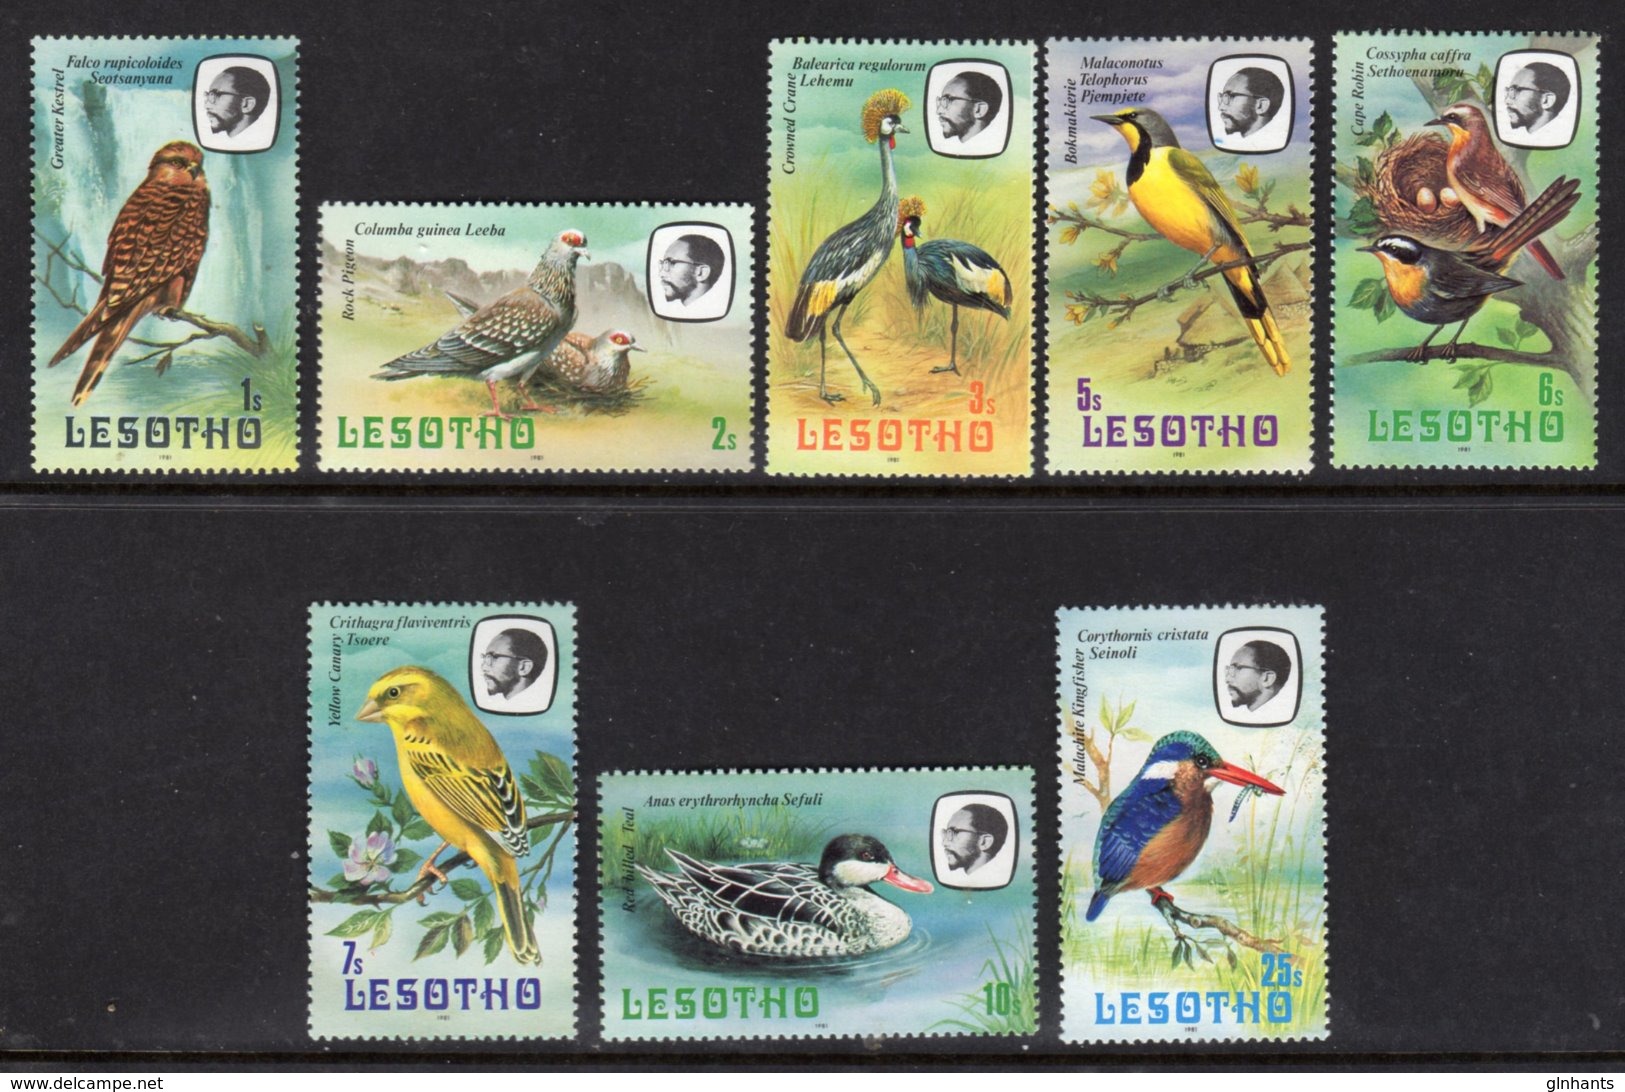 LESOTHO - 1981 SHORT SET OF BIRD STAMPS TO 25S (8V) FINE MNH ** SG 437-434 - Lesotho (1966-...)